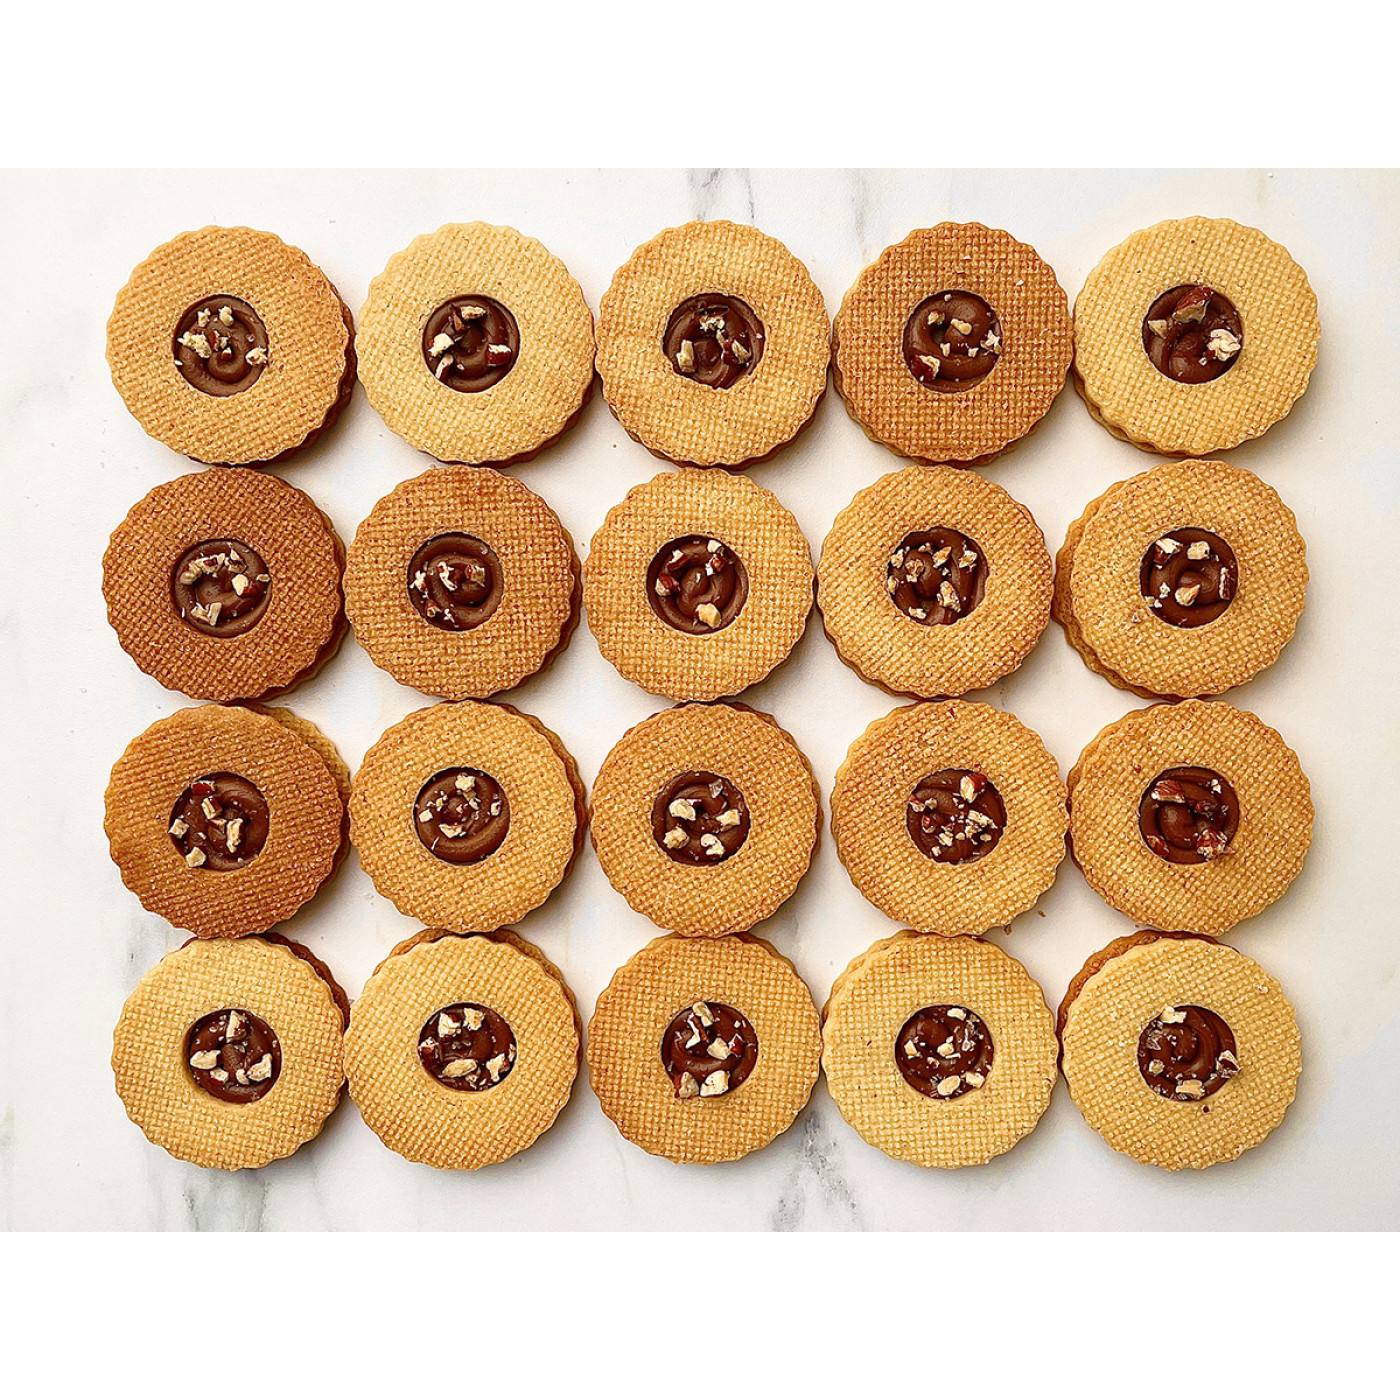 Caramel cookies